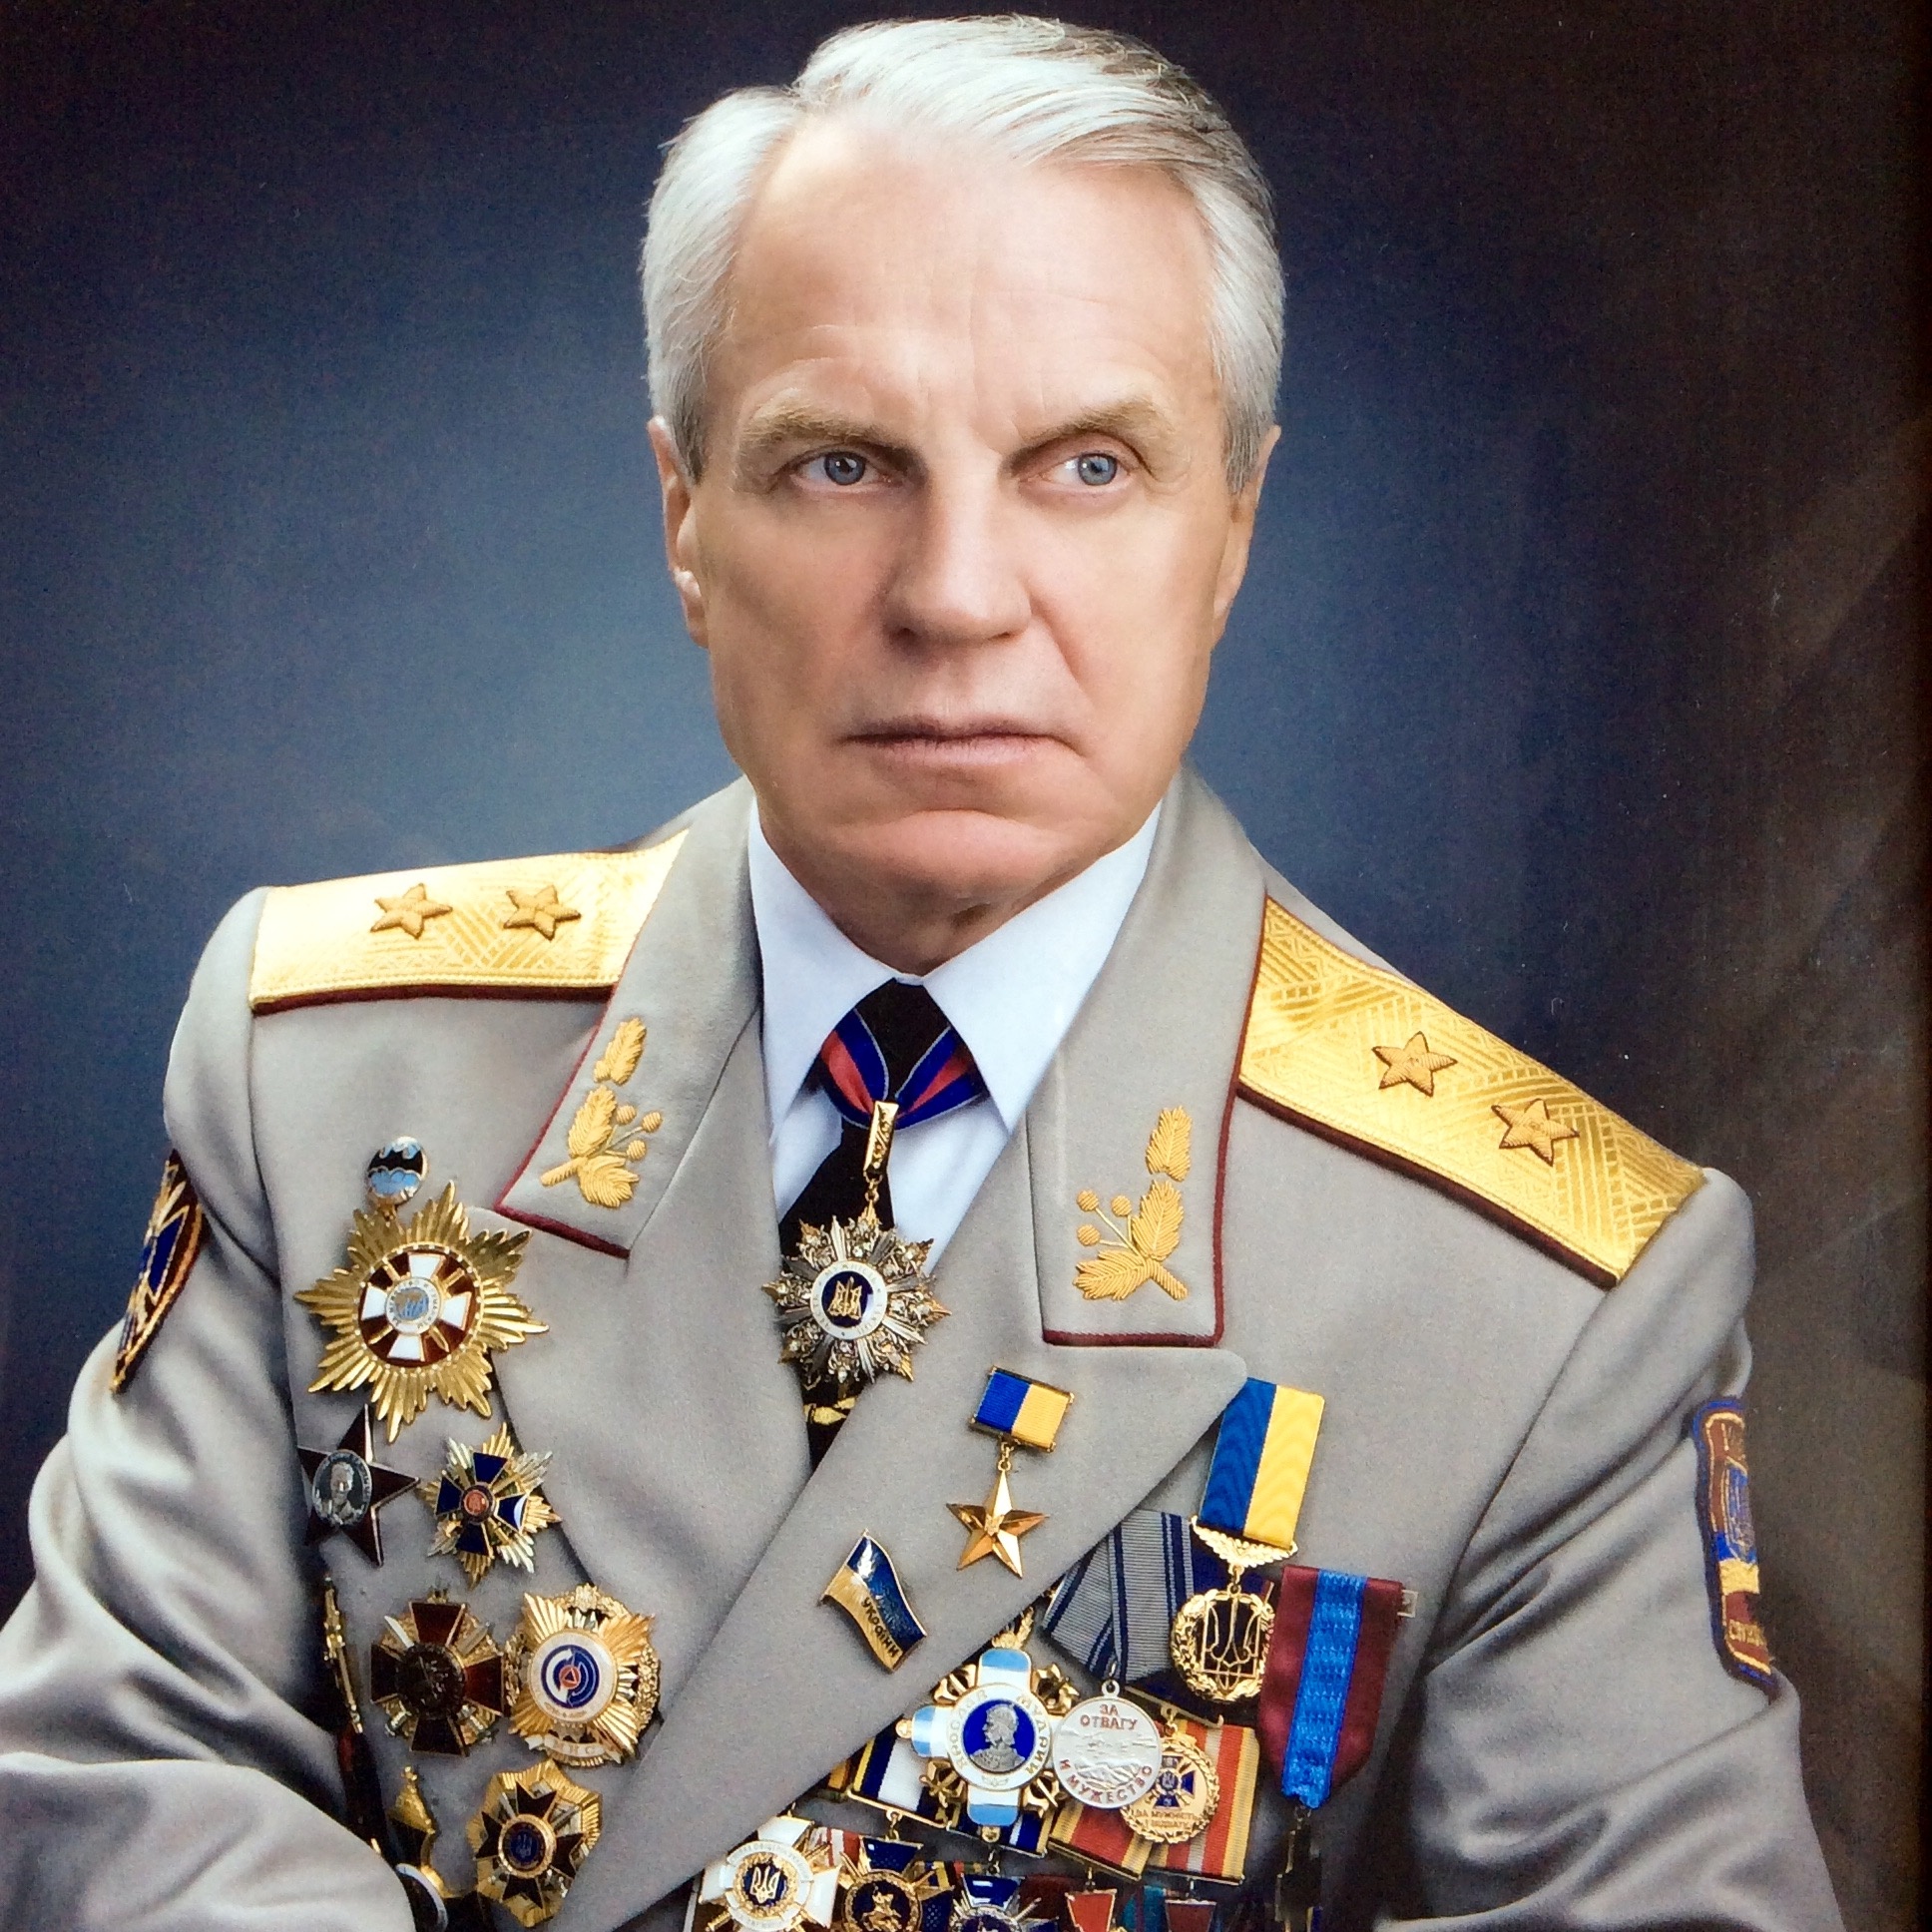 Ukrainec Grigorij Omelchenko - Почем лучше быть генералом, чем рядовым?